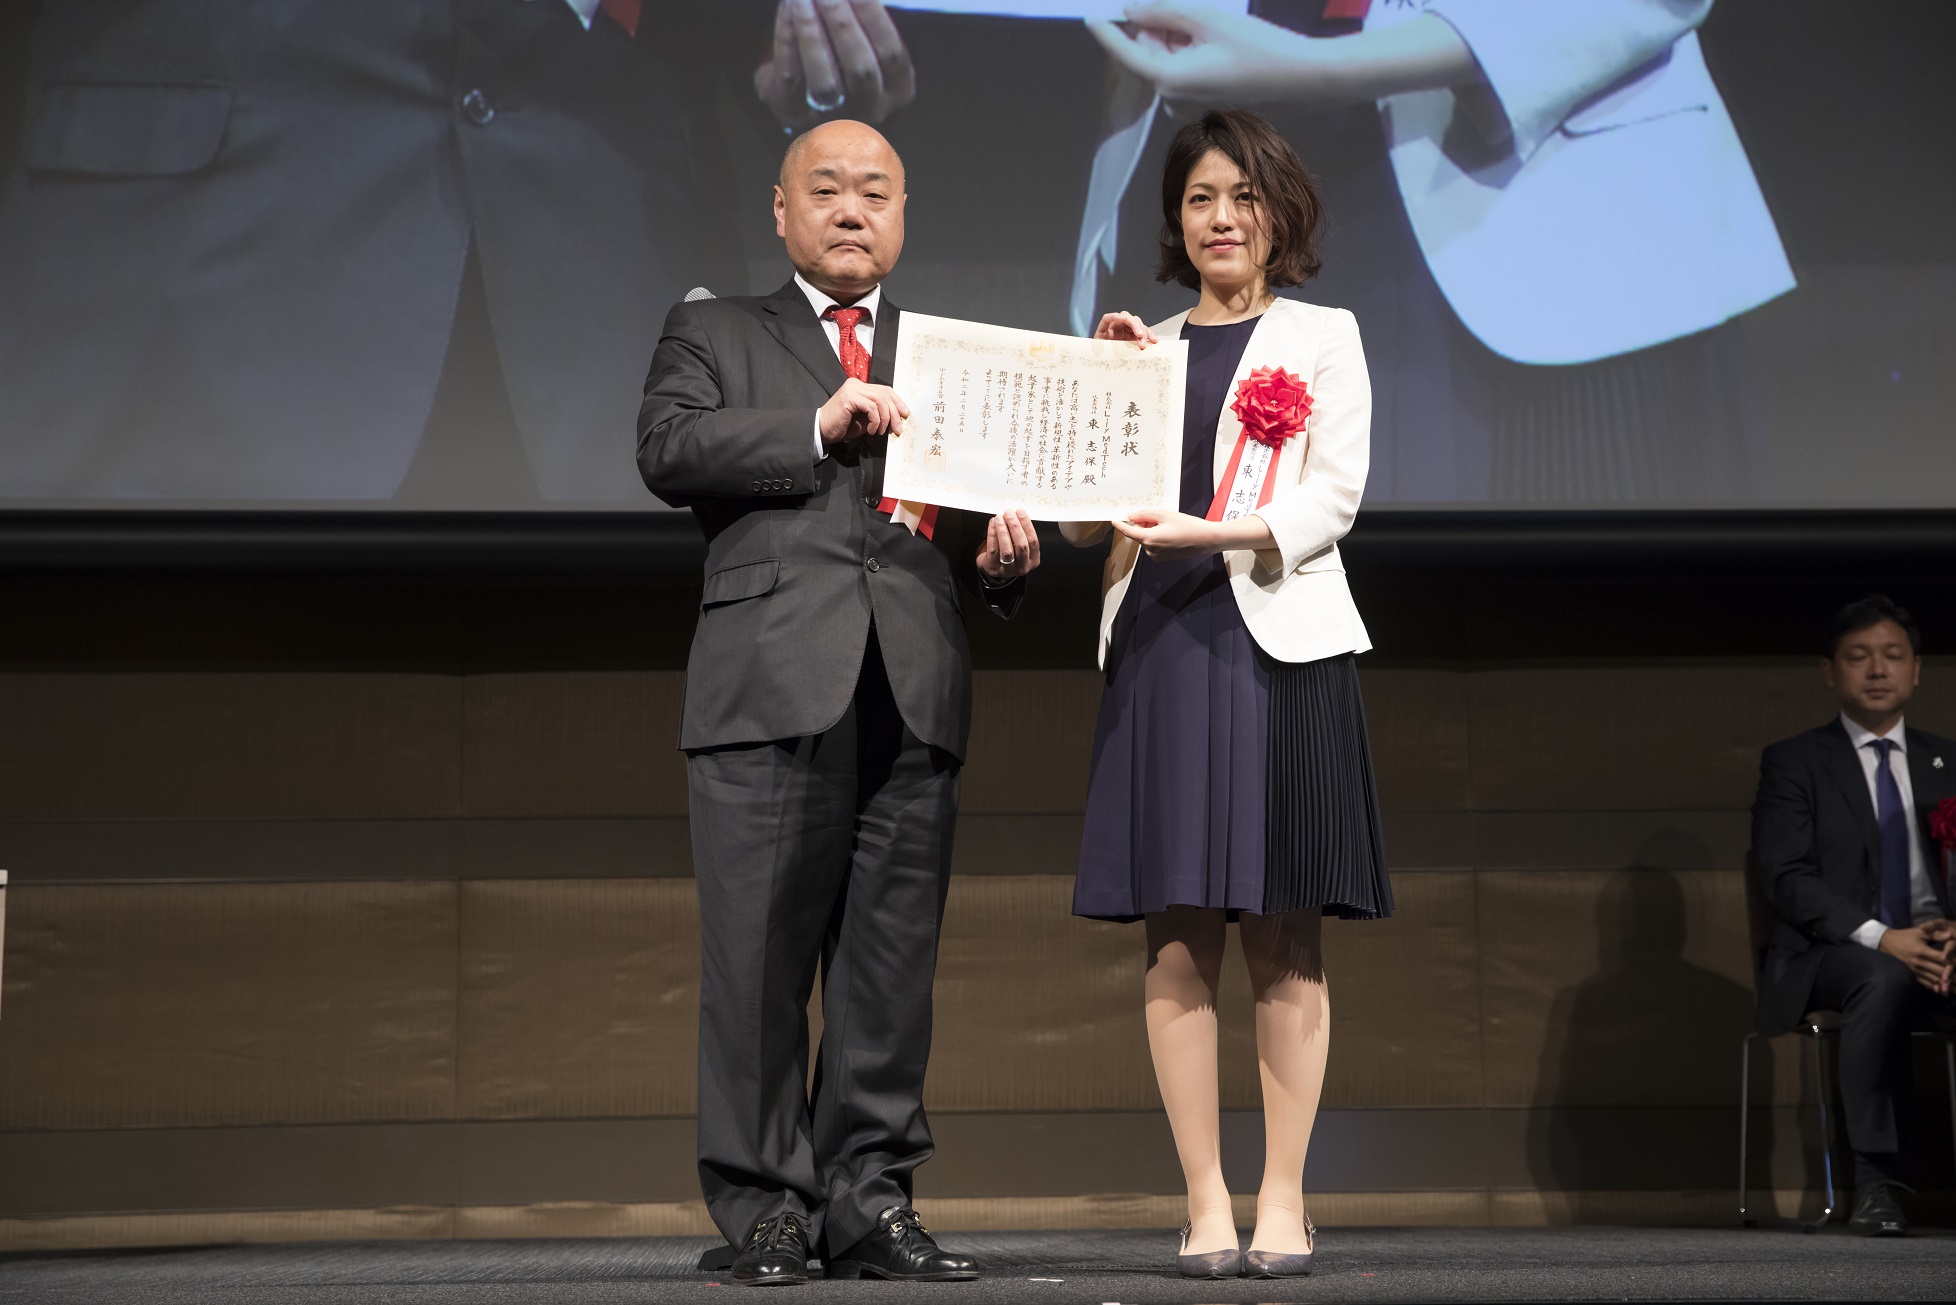 株式会社Lily MedTech がJapan Venture Awards 2020において中小企業庁長官賞を受賞しました。